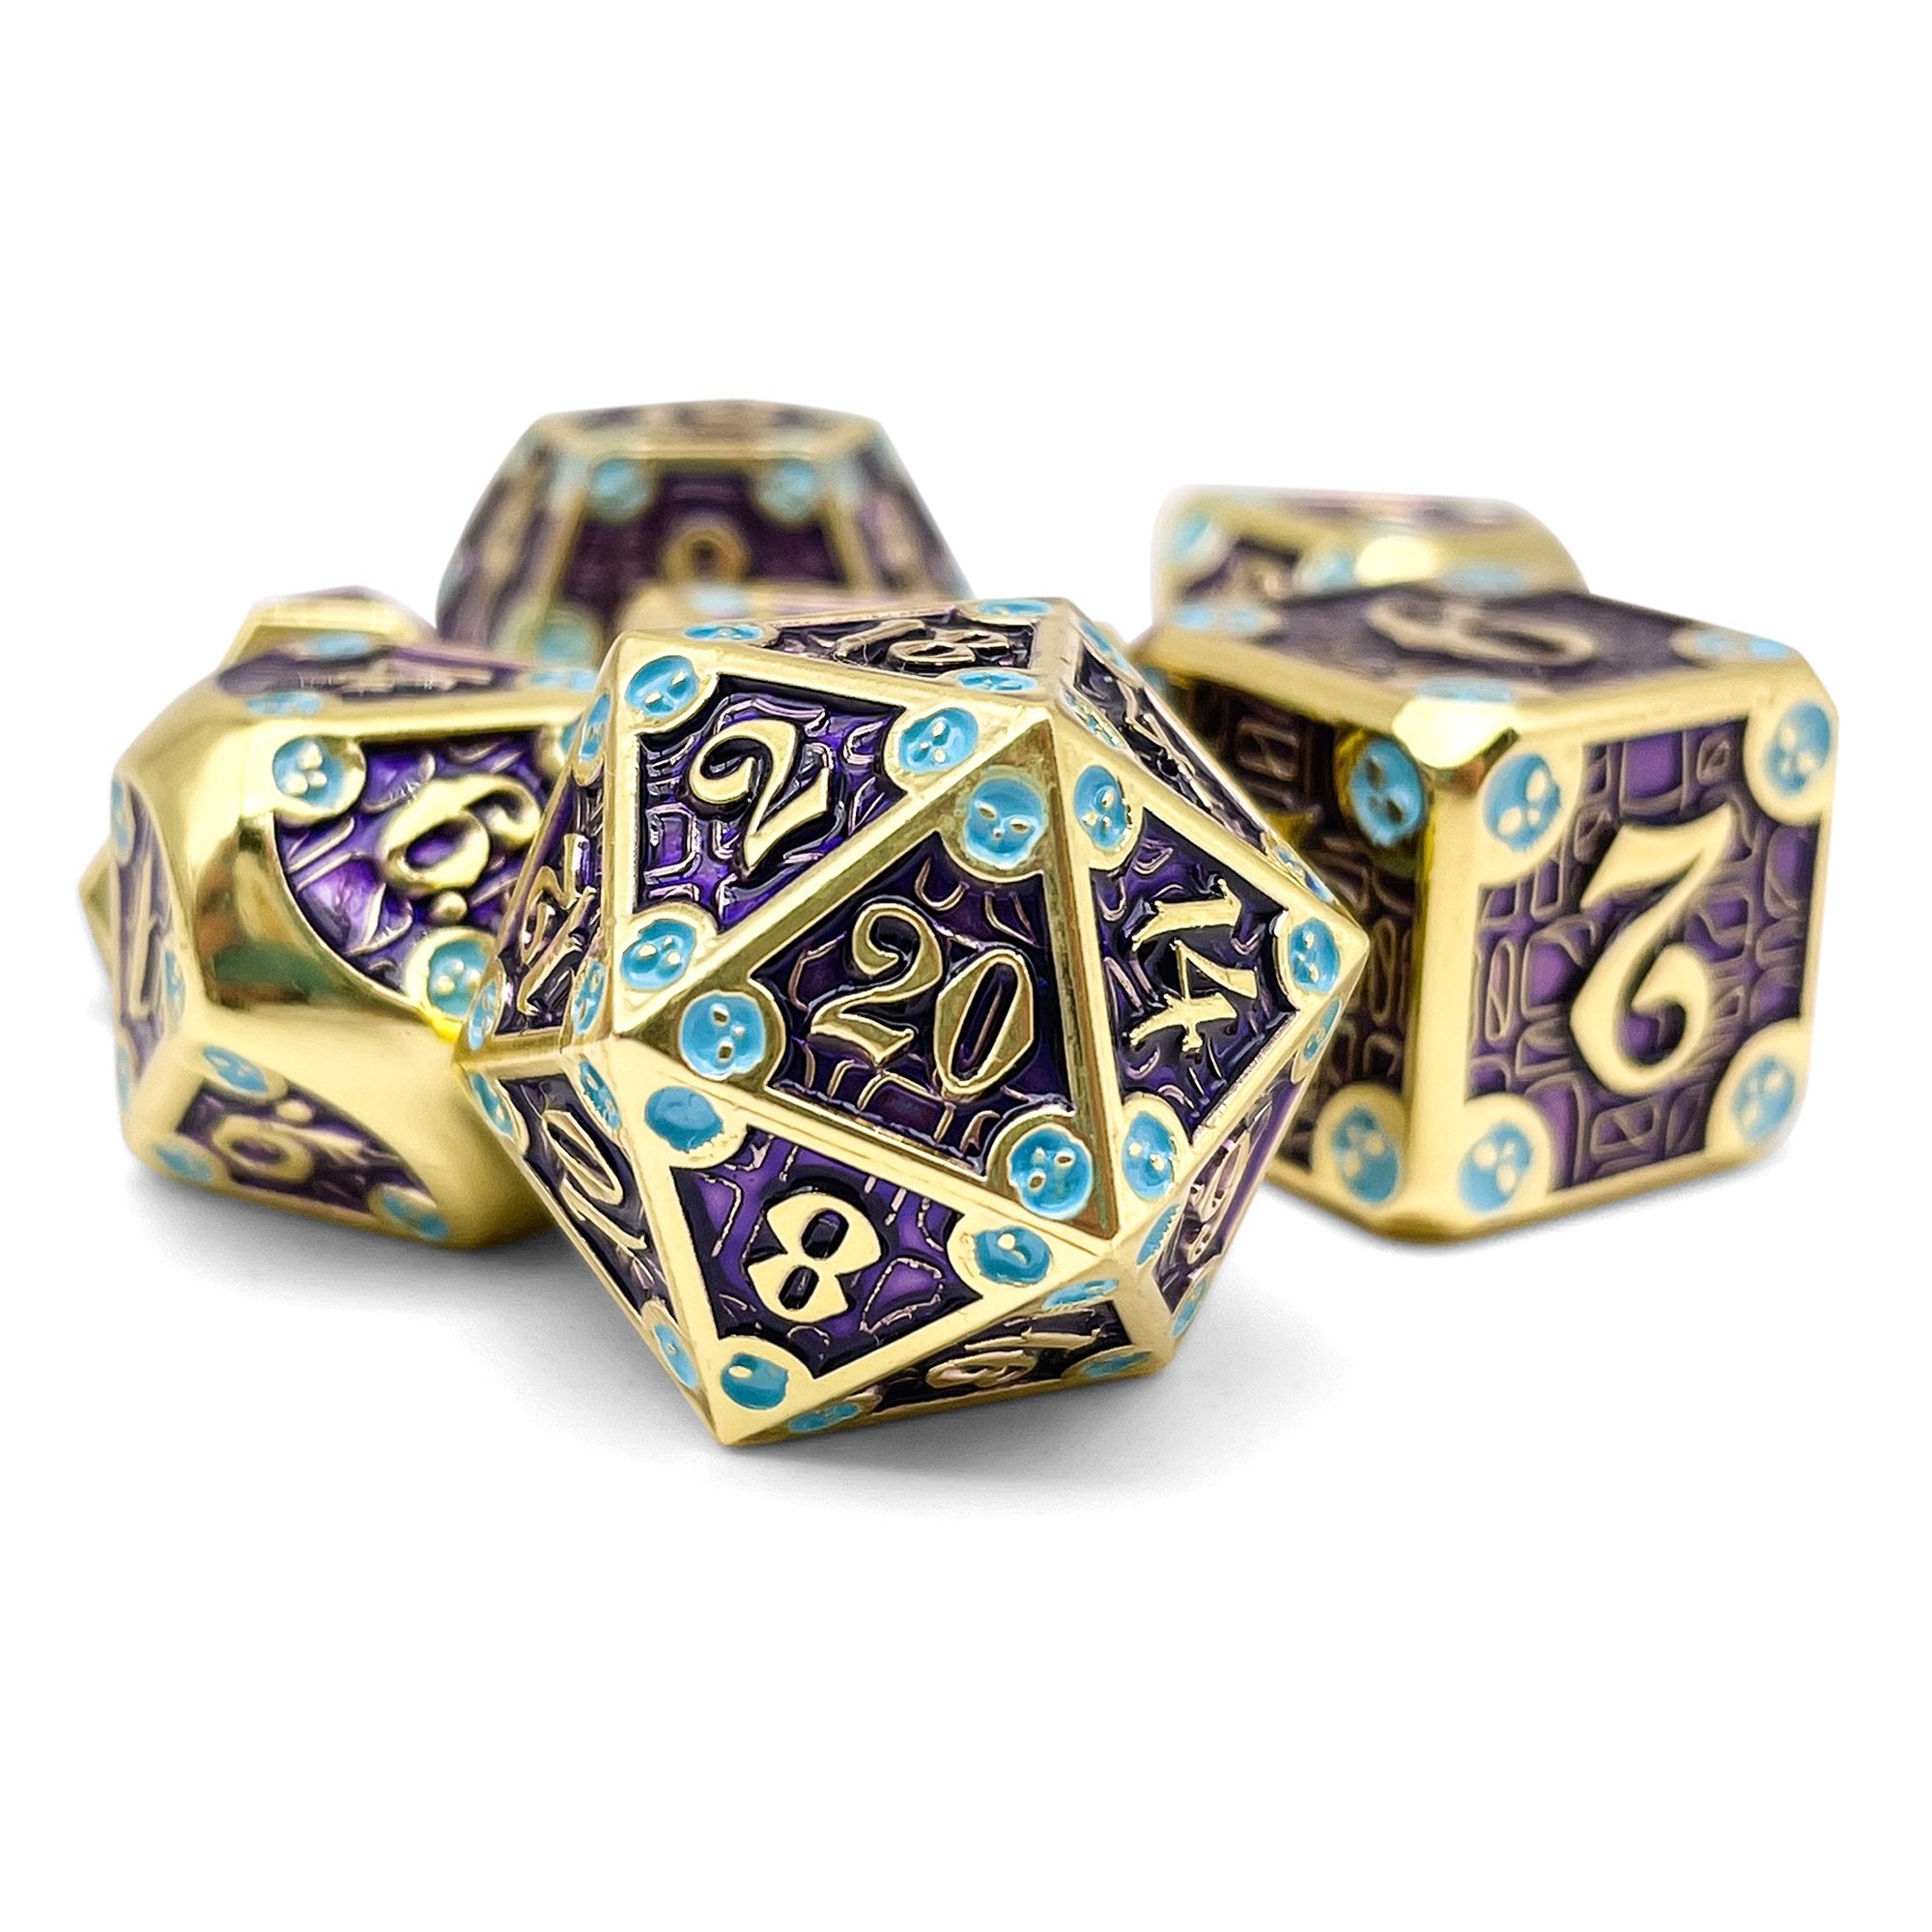 Dungeon Delve - Royal Crown Polyhedral 7-Die Set